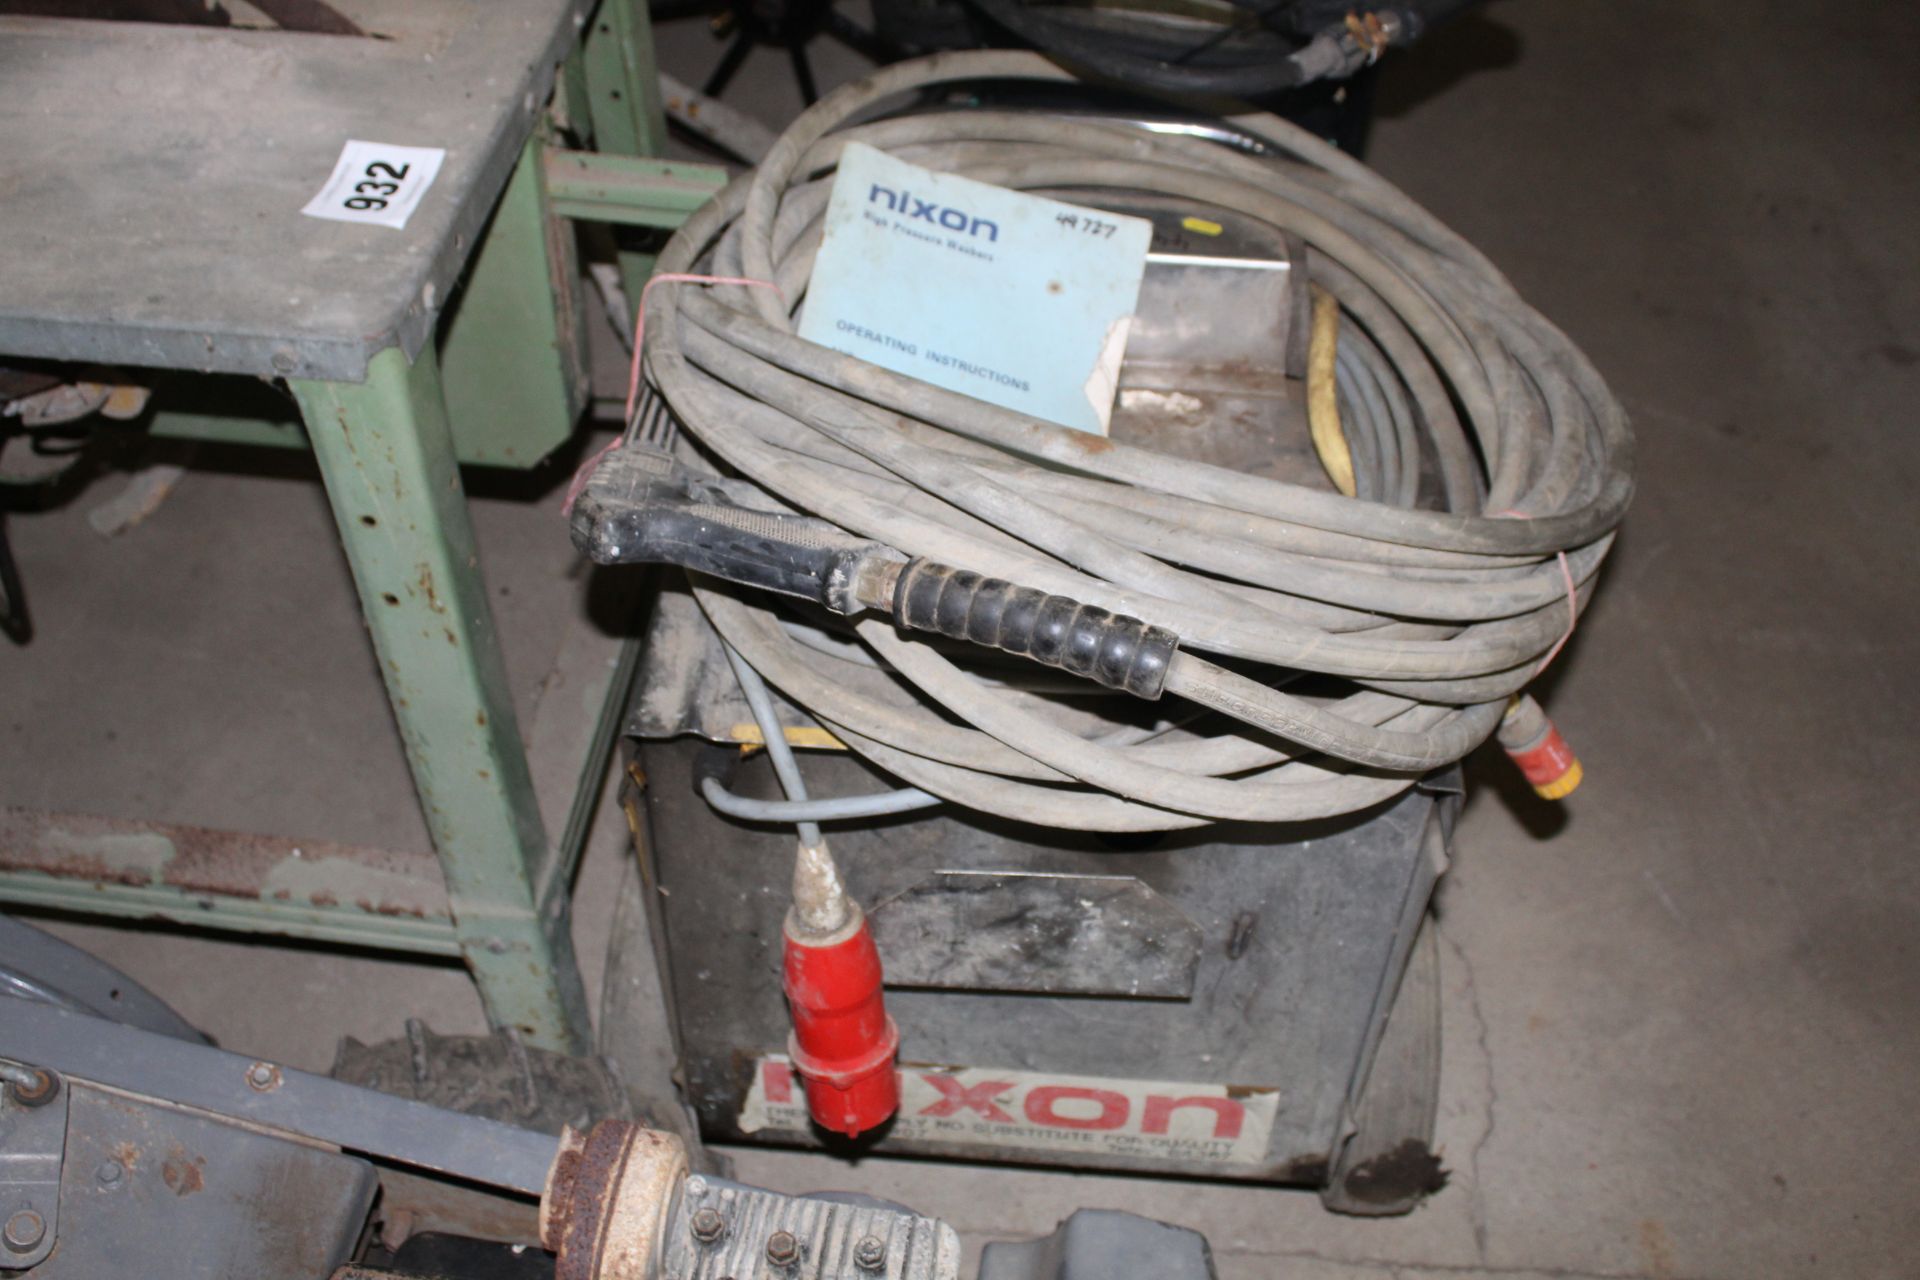 Nixon pressure washer. 3 piston, brass pump. With manual. - Bild 2 aus 4